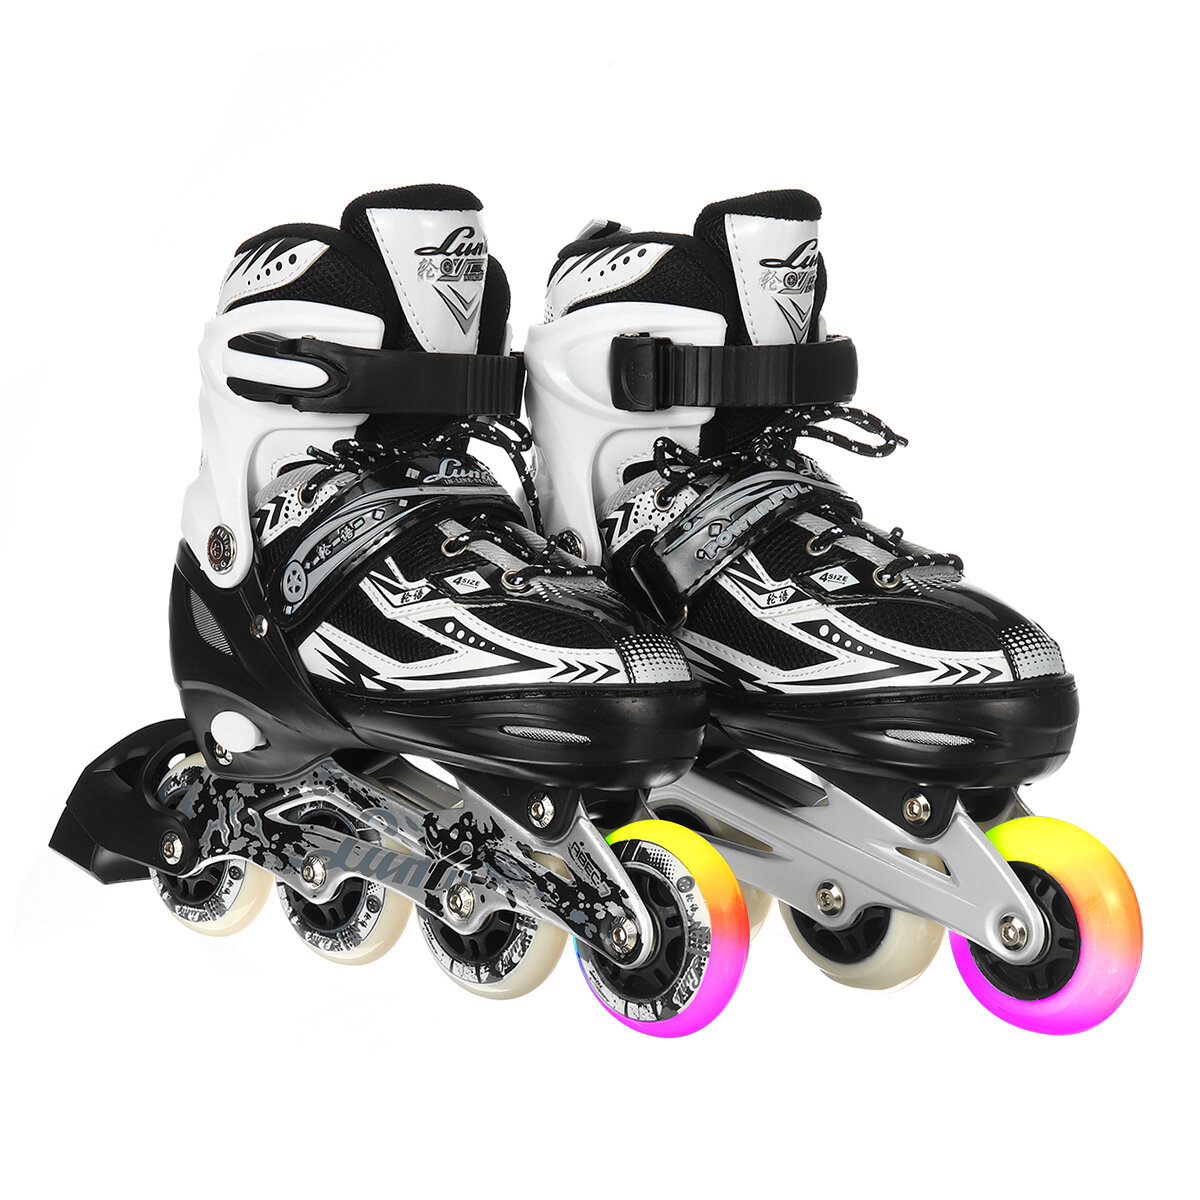 أحذية تزلج مضمنة مضيئة للأطفال البالغين ، زلاجات دوارة للمبتدئين 4 تروس قابلة للتعديل ، أحذية تزلج قابلة للتنفس مع عجلات